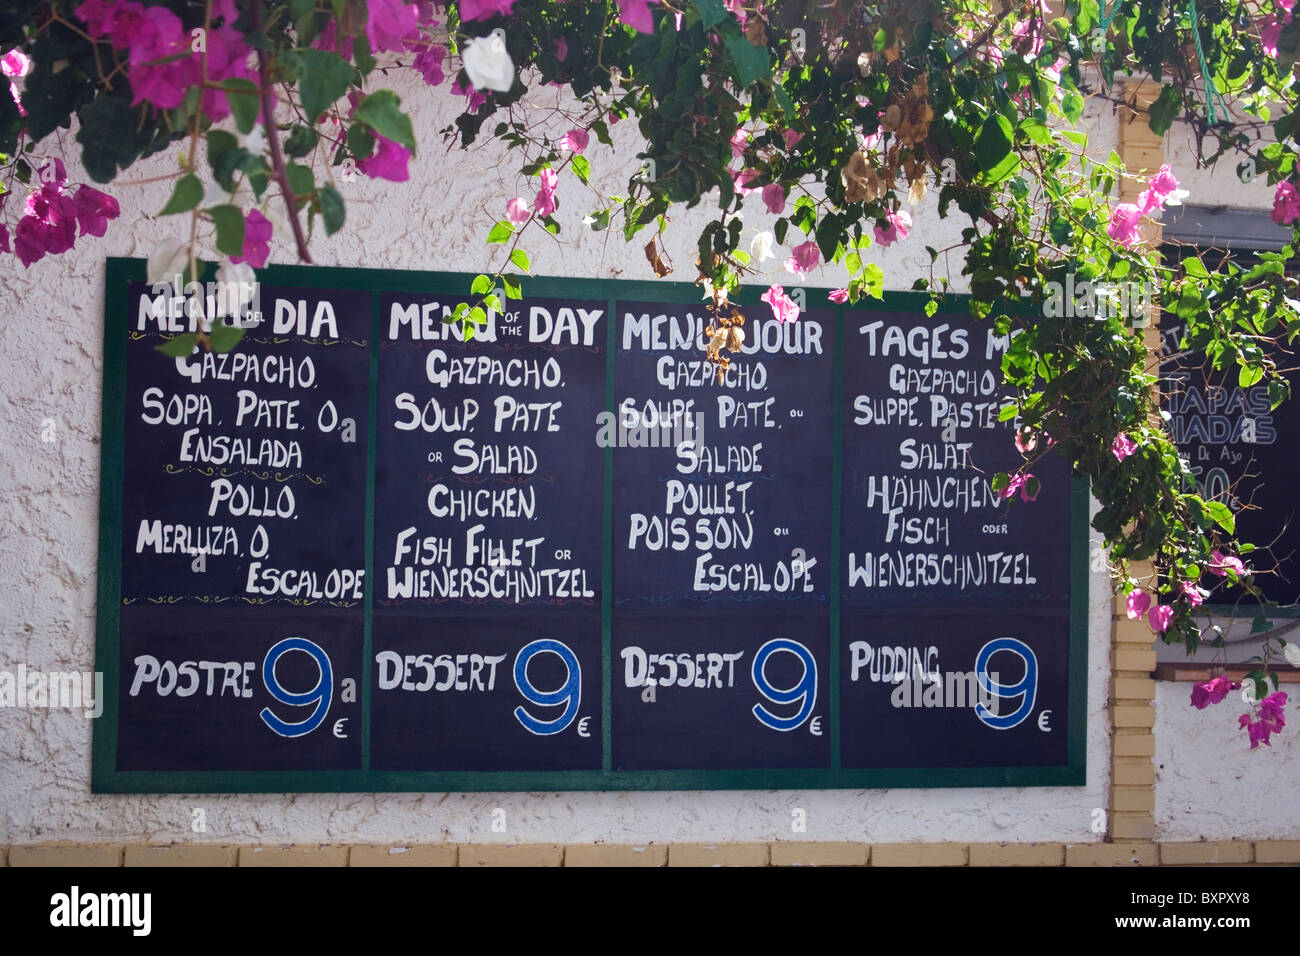 Speisekarte an Bord in vier verschiedenen Sprachen Werbung das Menü des Tages bei neun Euro. Stockfoto